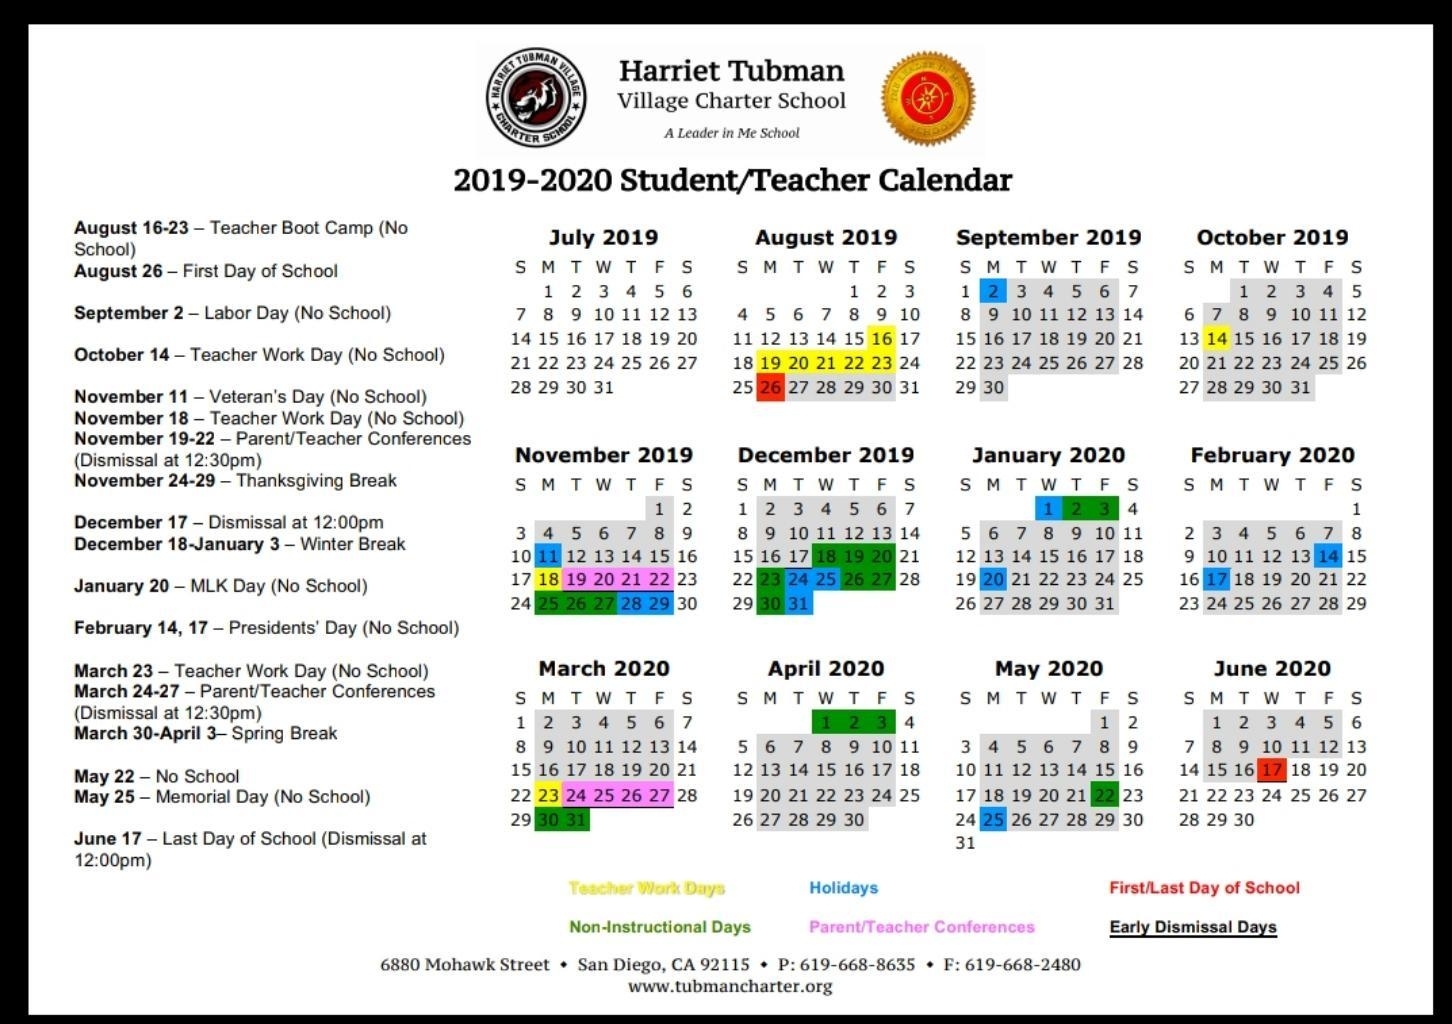 School Year Calendar 2019-20 – School Year Calendar 2019-20